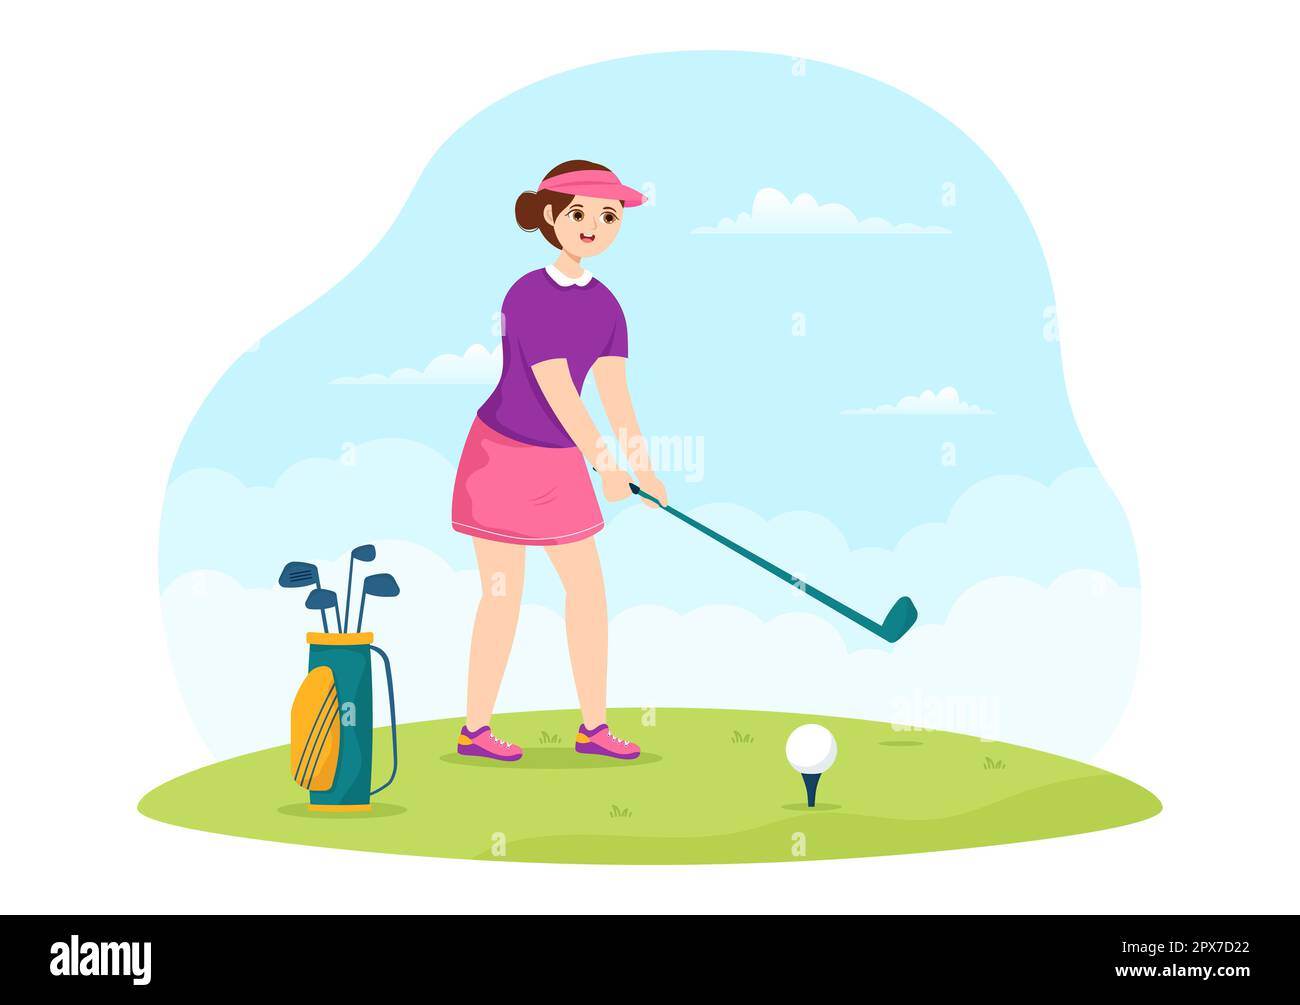 Ilustración del deporte del golf con banderas, carro, palos, campo verde y búnker de arena para la diversión al aire libre o estilo de vida en plantillas dibujadas a mano planas de dibujos animados Foto de stock